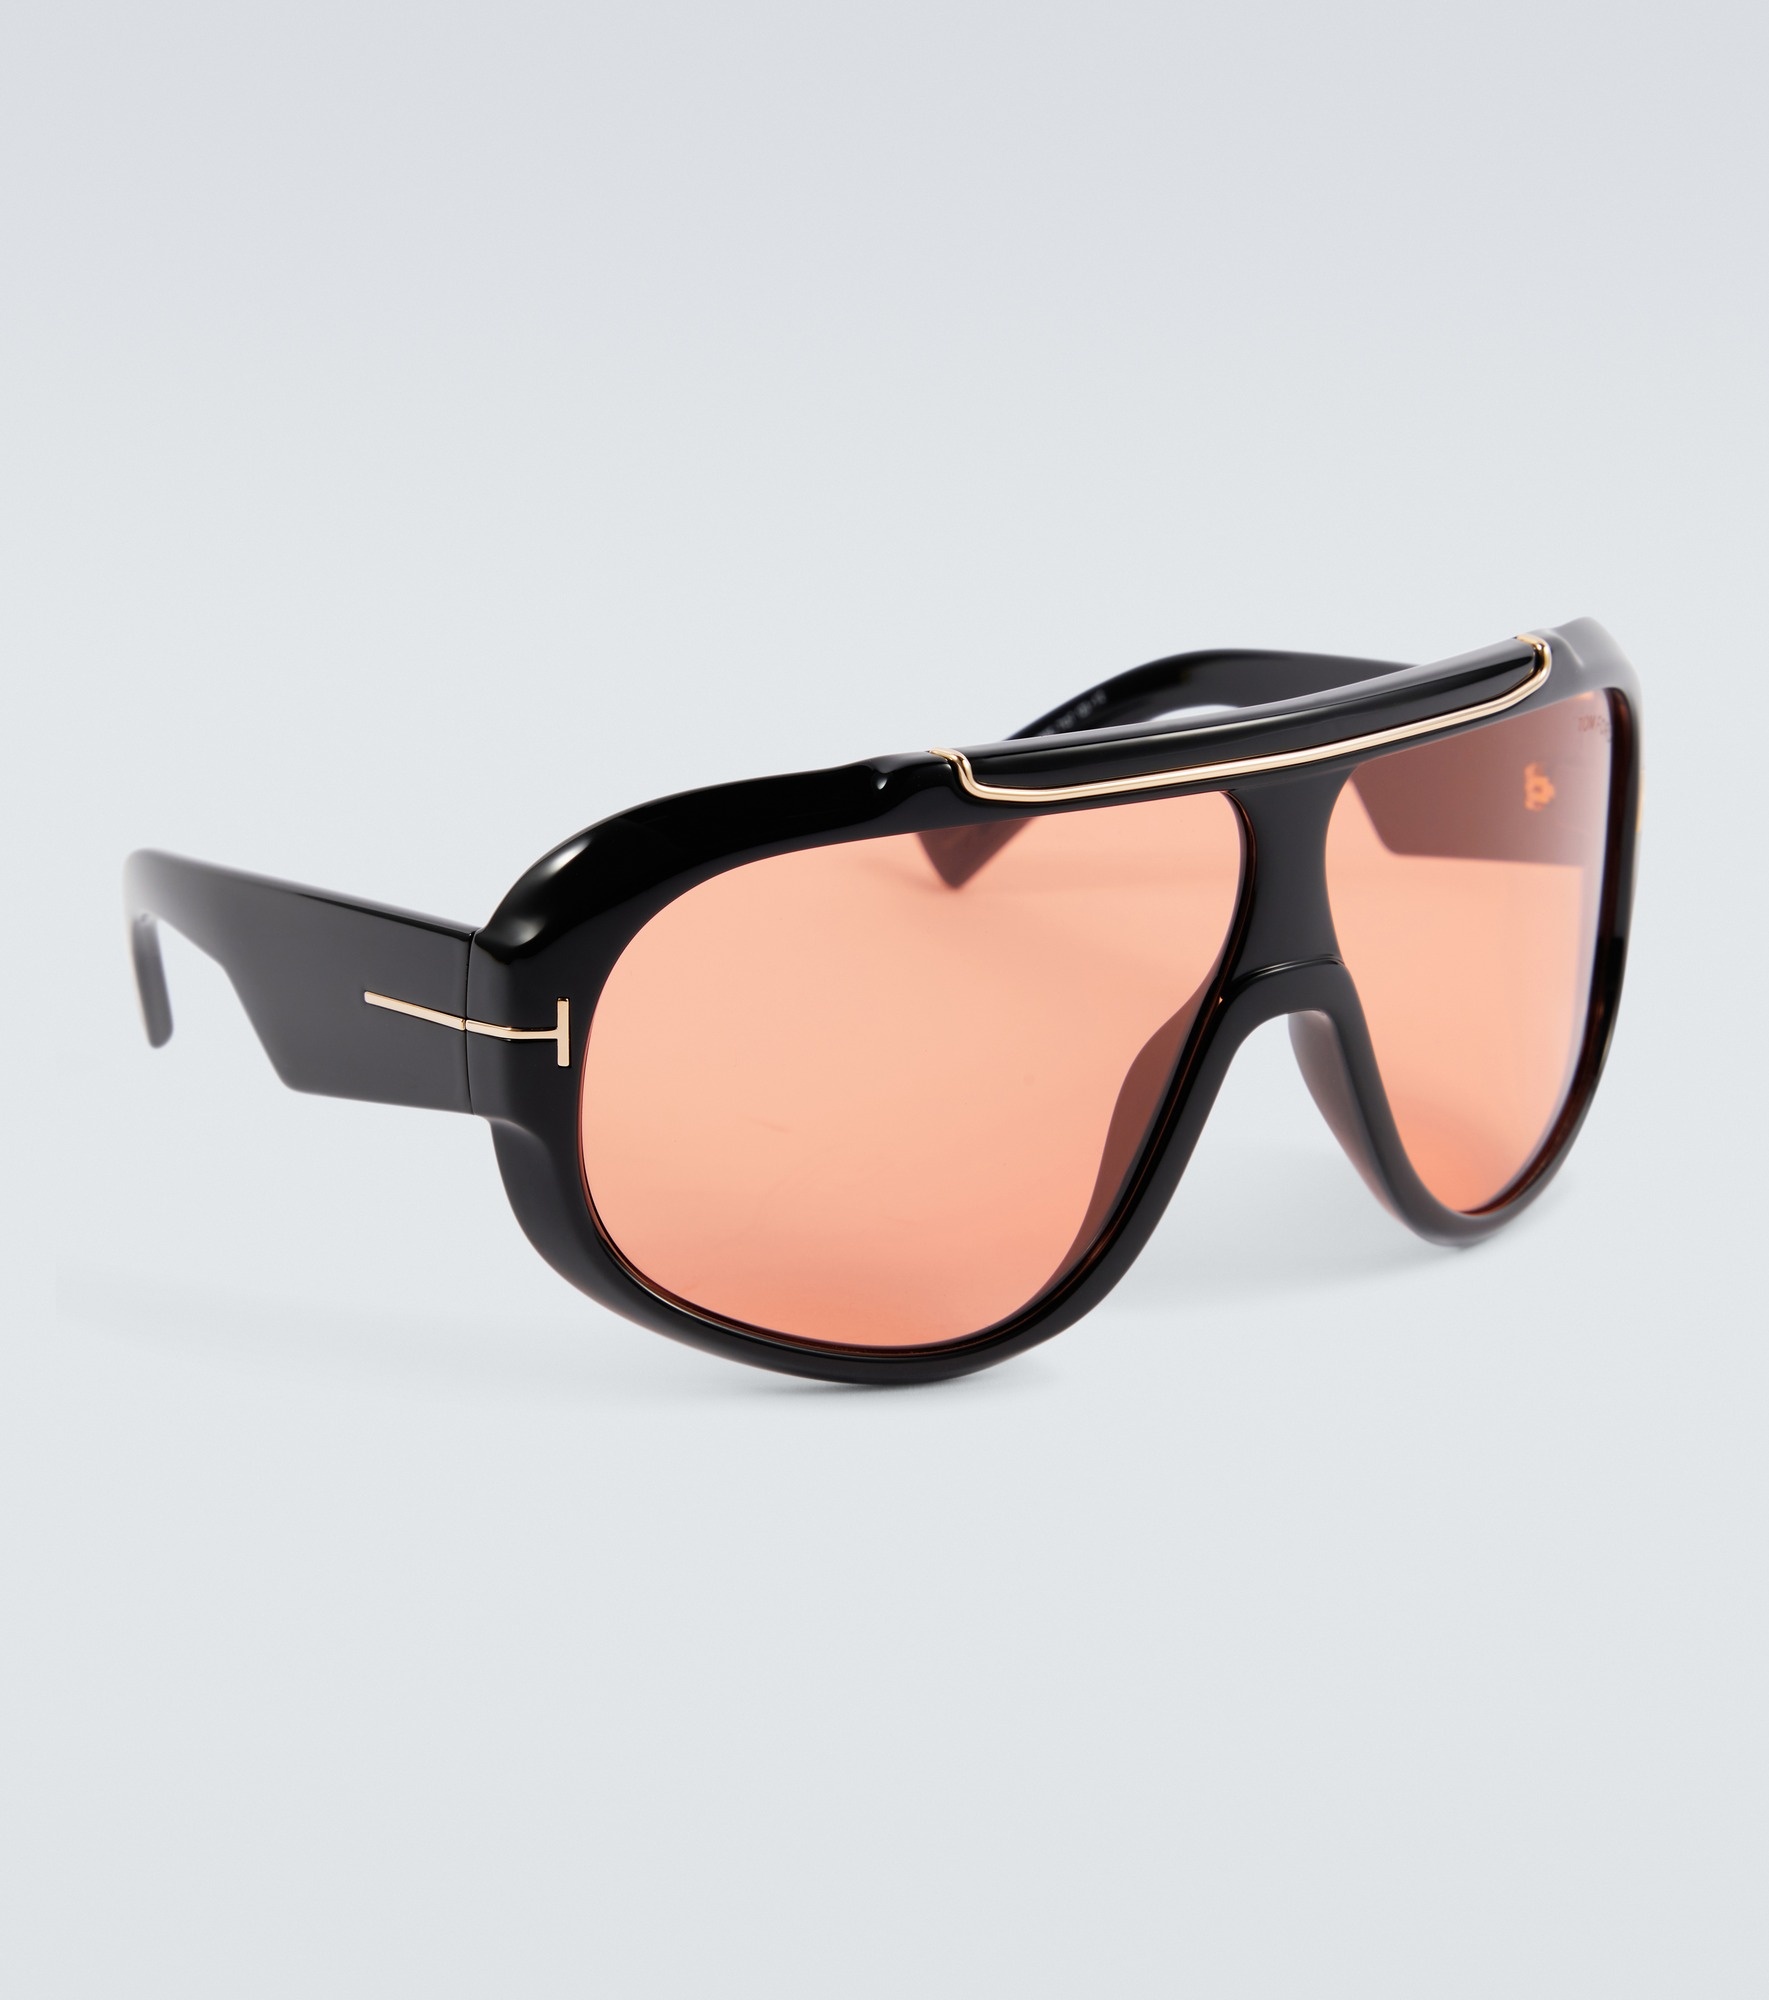 Rellen shield sunglasses - 4